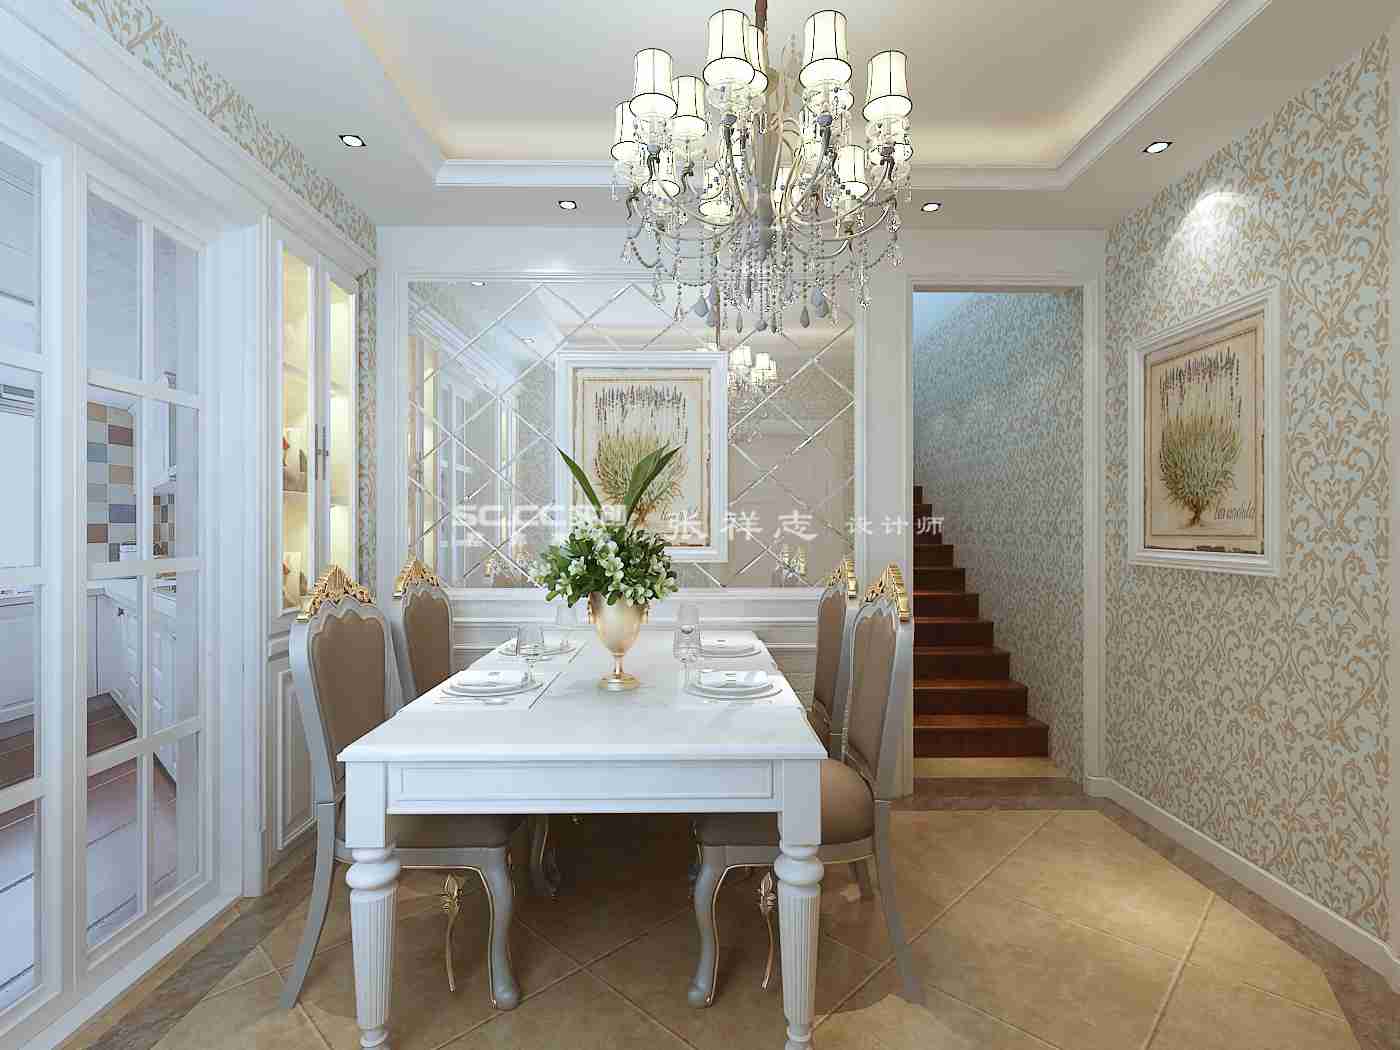 别墅 欧式 复式 实创 装修 餐厅图片来自快乐彩在红墅湾145平现代欧式装修设计的分享